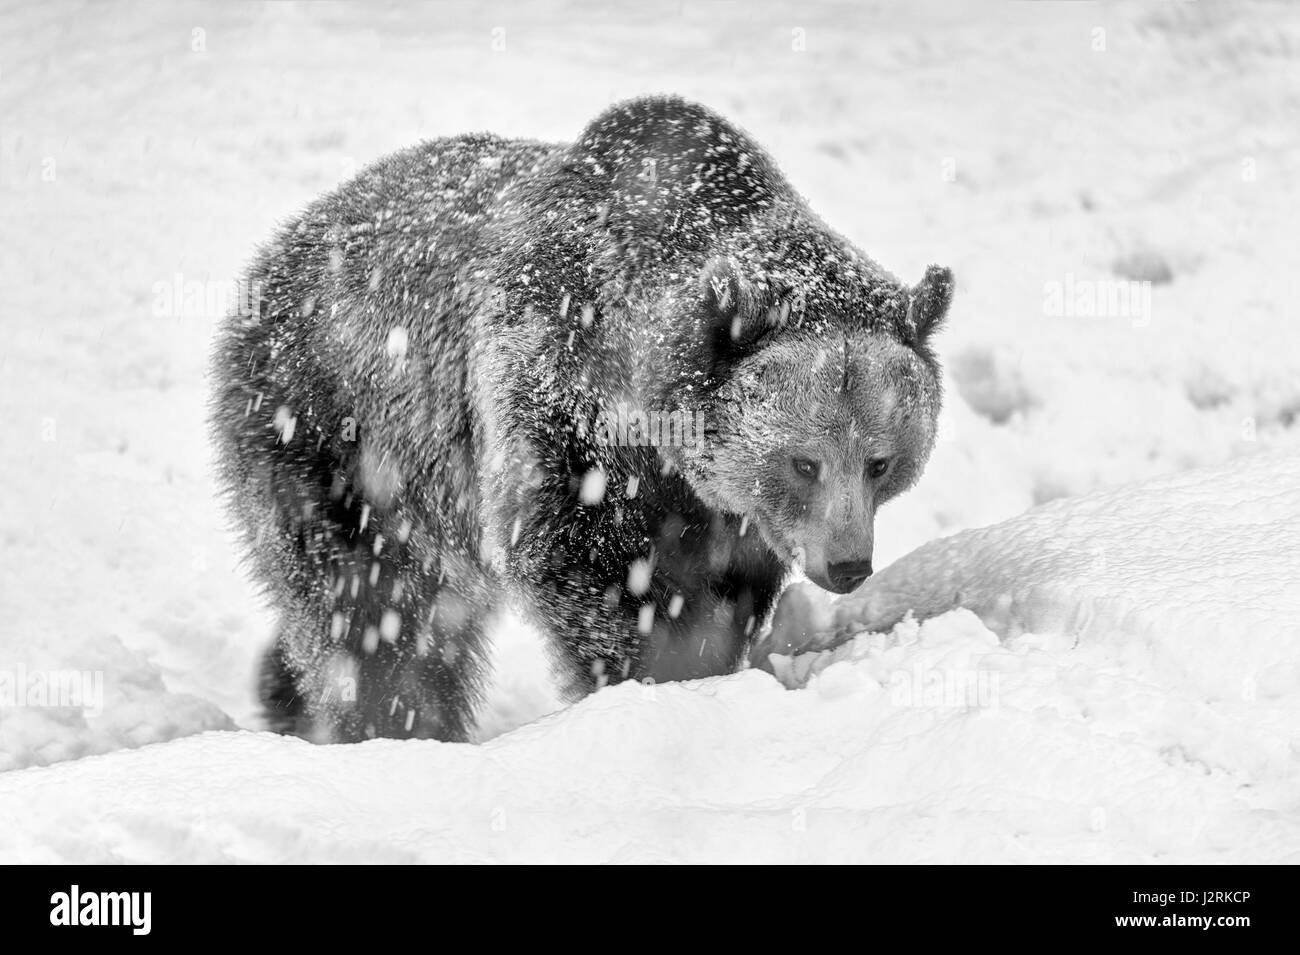 Solo para mujeres adultas Euroasiática de oso pardo (Ursus arctos) serpenteante en una tormenta de nieve en invierno. (Bellas Artes, High Key, Blanco y negro) Foto de stock